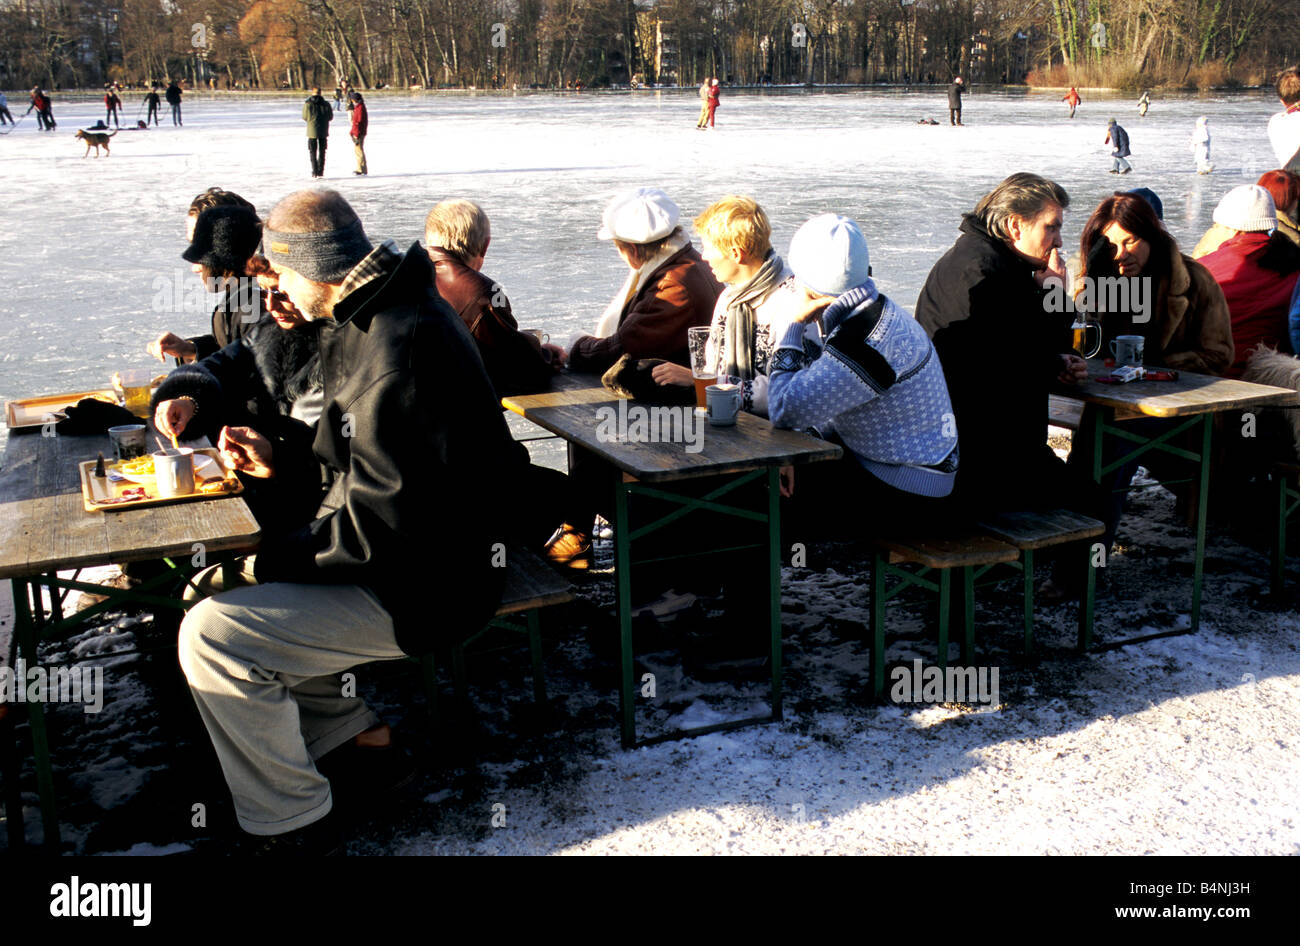 Customers in winter clothing enjoy an afternoon at the Seehaus Beer Garden in Munich's snow clad Englischer Garten Stock Photo